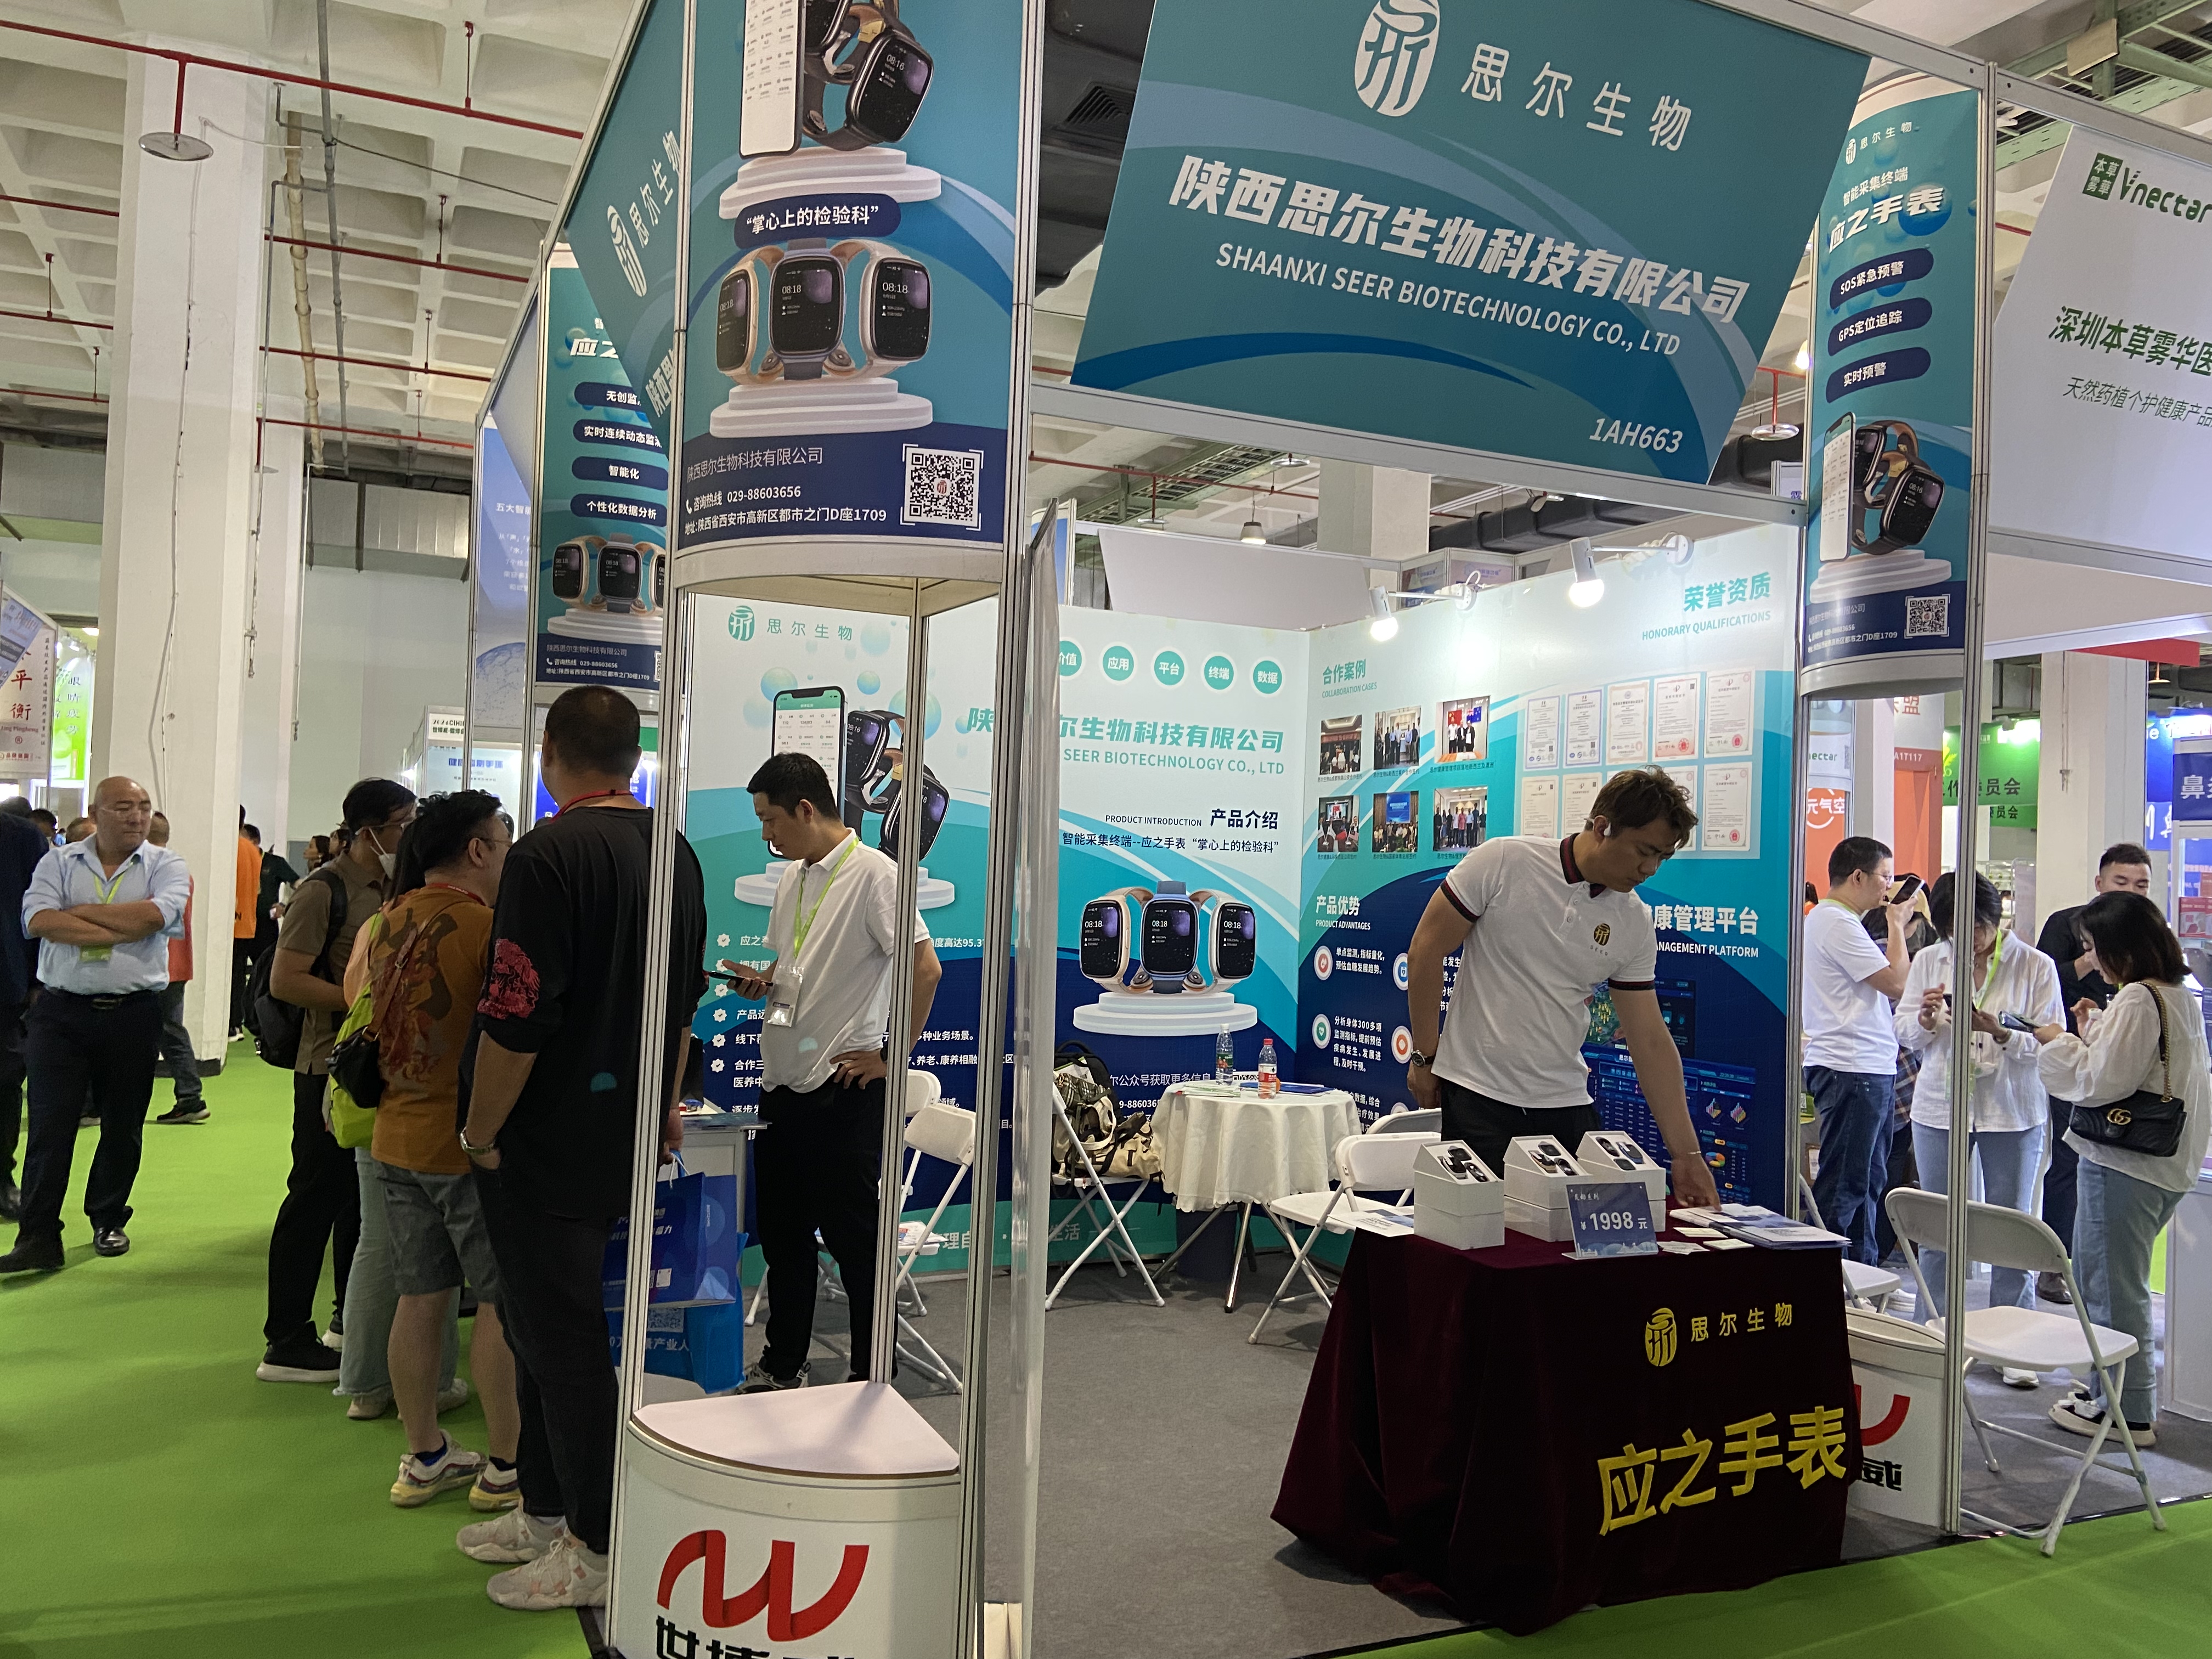 【大健康盛会 震撼来袭】思尔生物带您走进第32届中国国际健康产业博览会